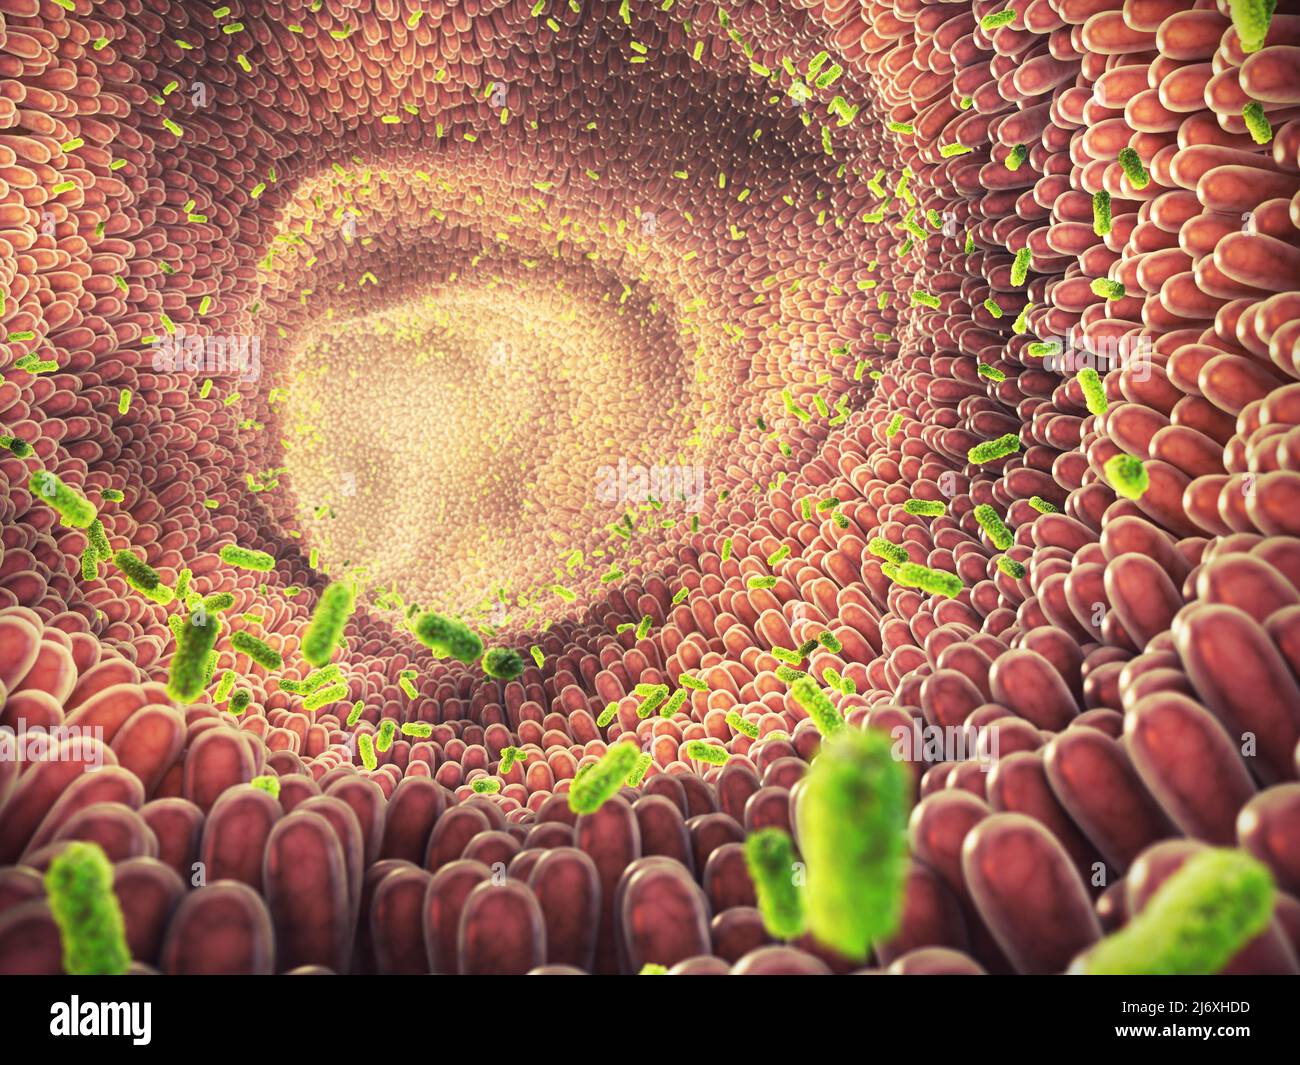 Illustration des bactéries intestinales. Le microbiome intestinal aide à contrôler la digestion intestinale et le système immunitaire. Les probiotiques sont des bactéries bénéfiques Banque D'Images